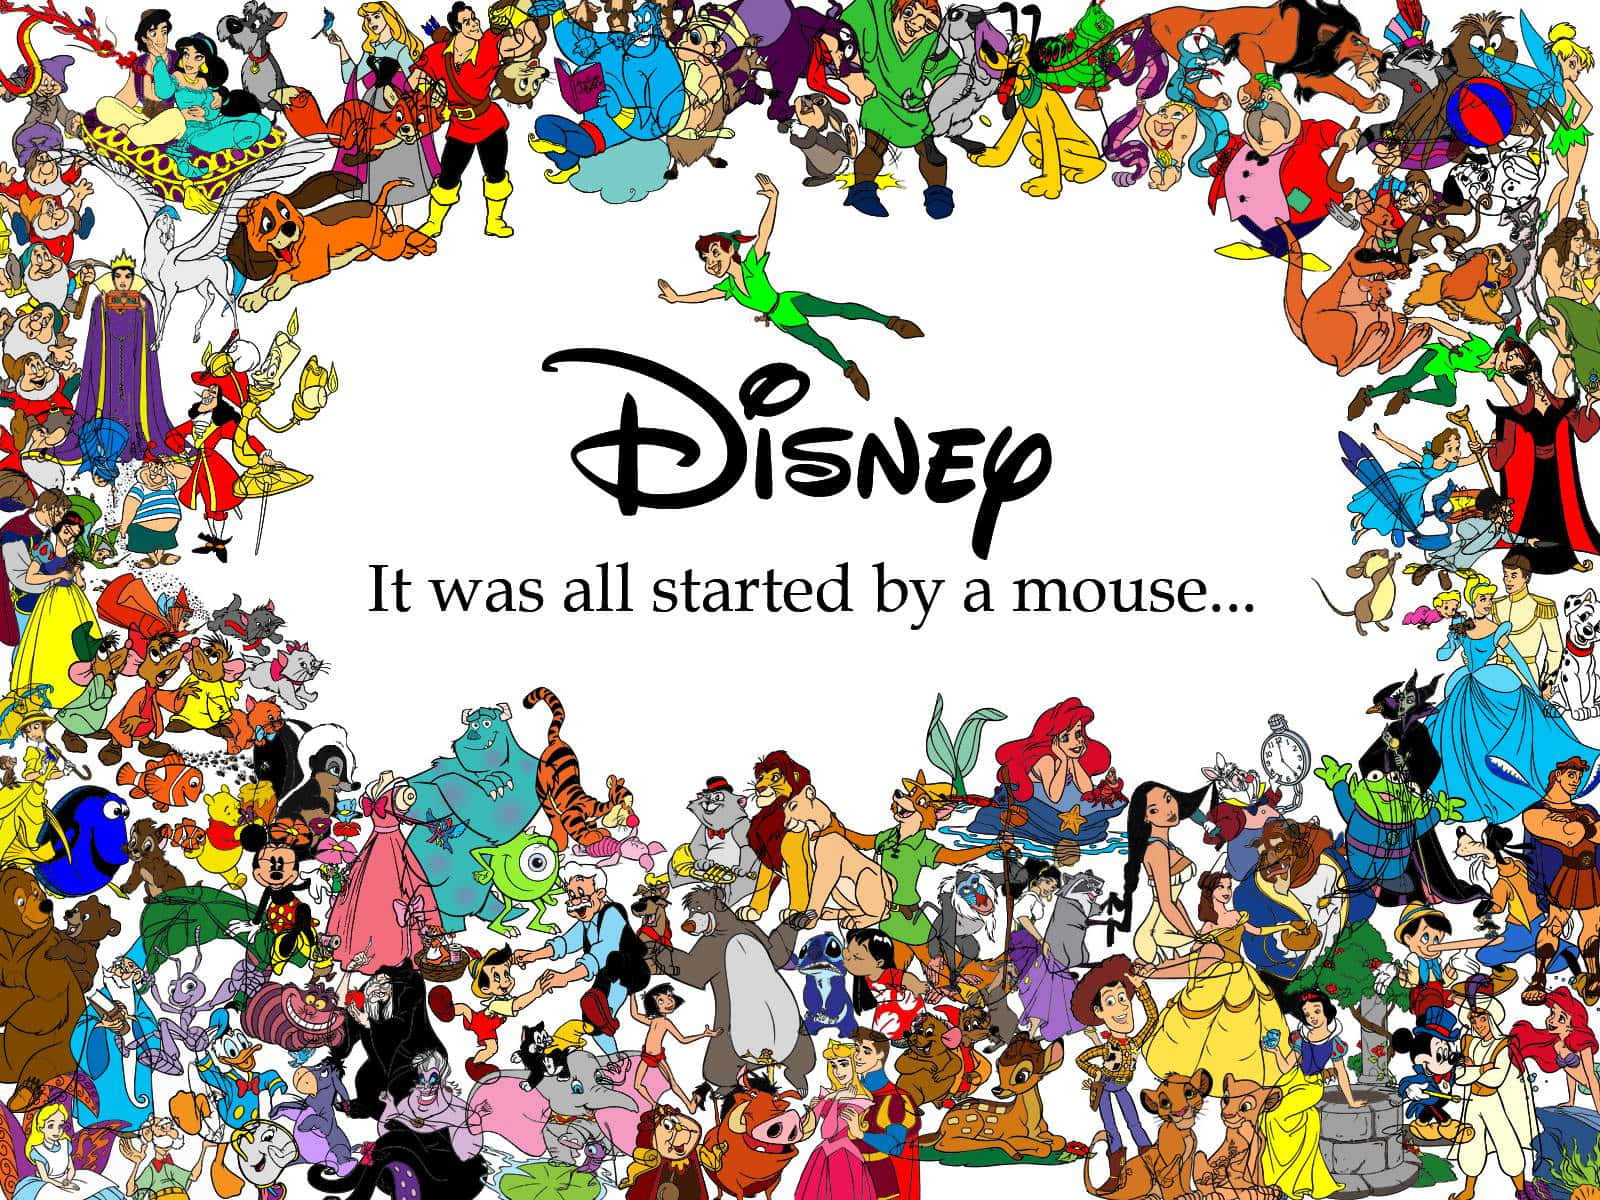 Bedste Disney-baggrund alle karakterer i hver Disney-film